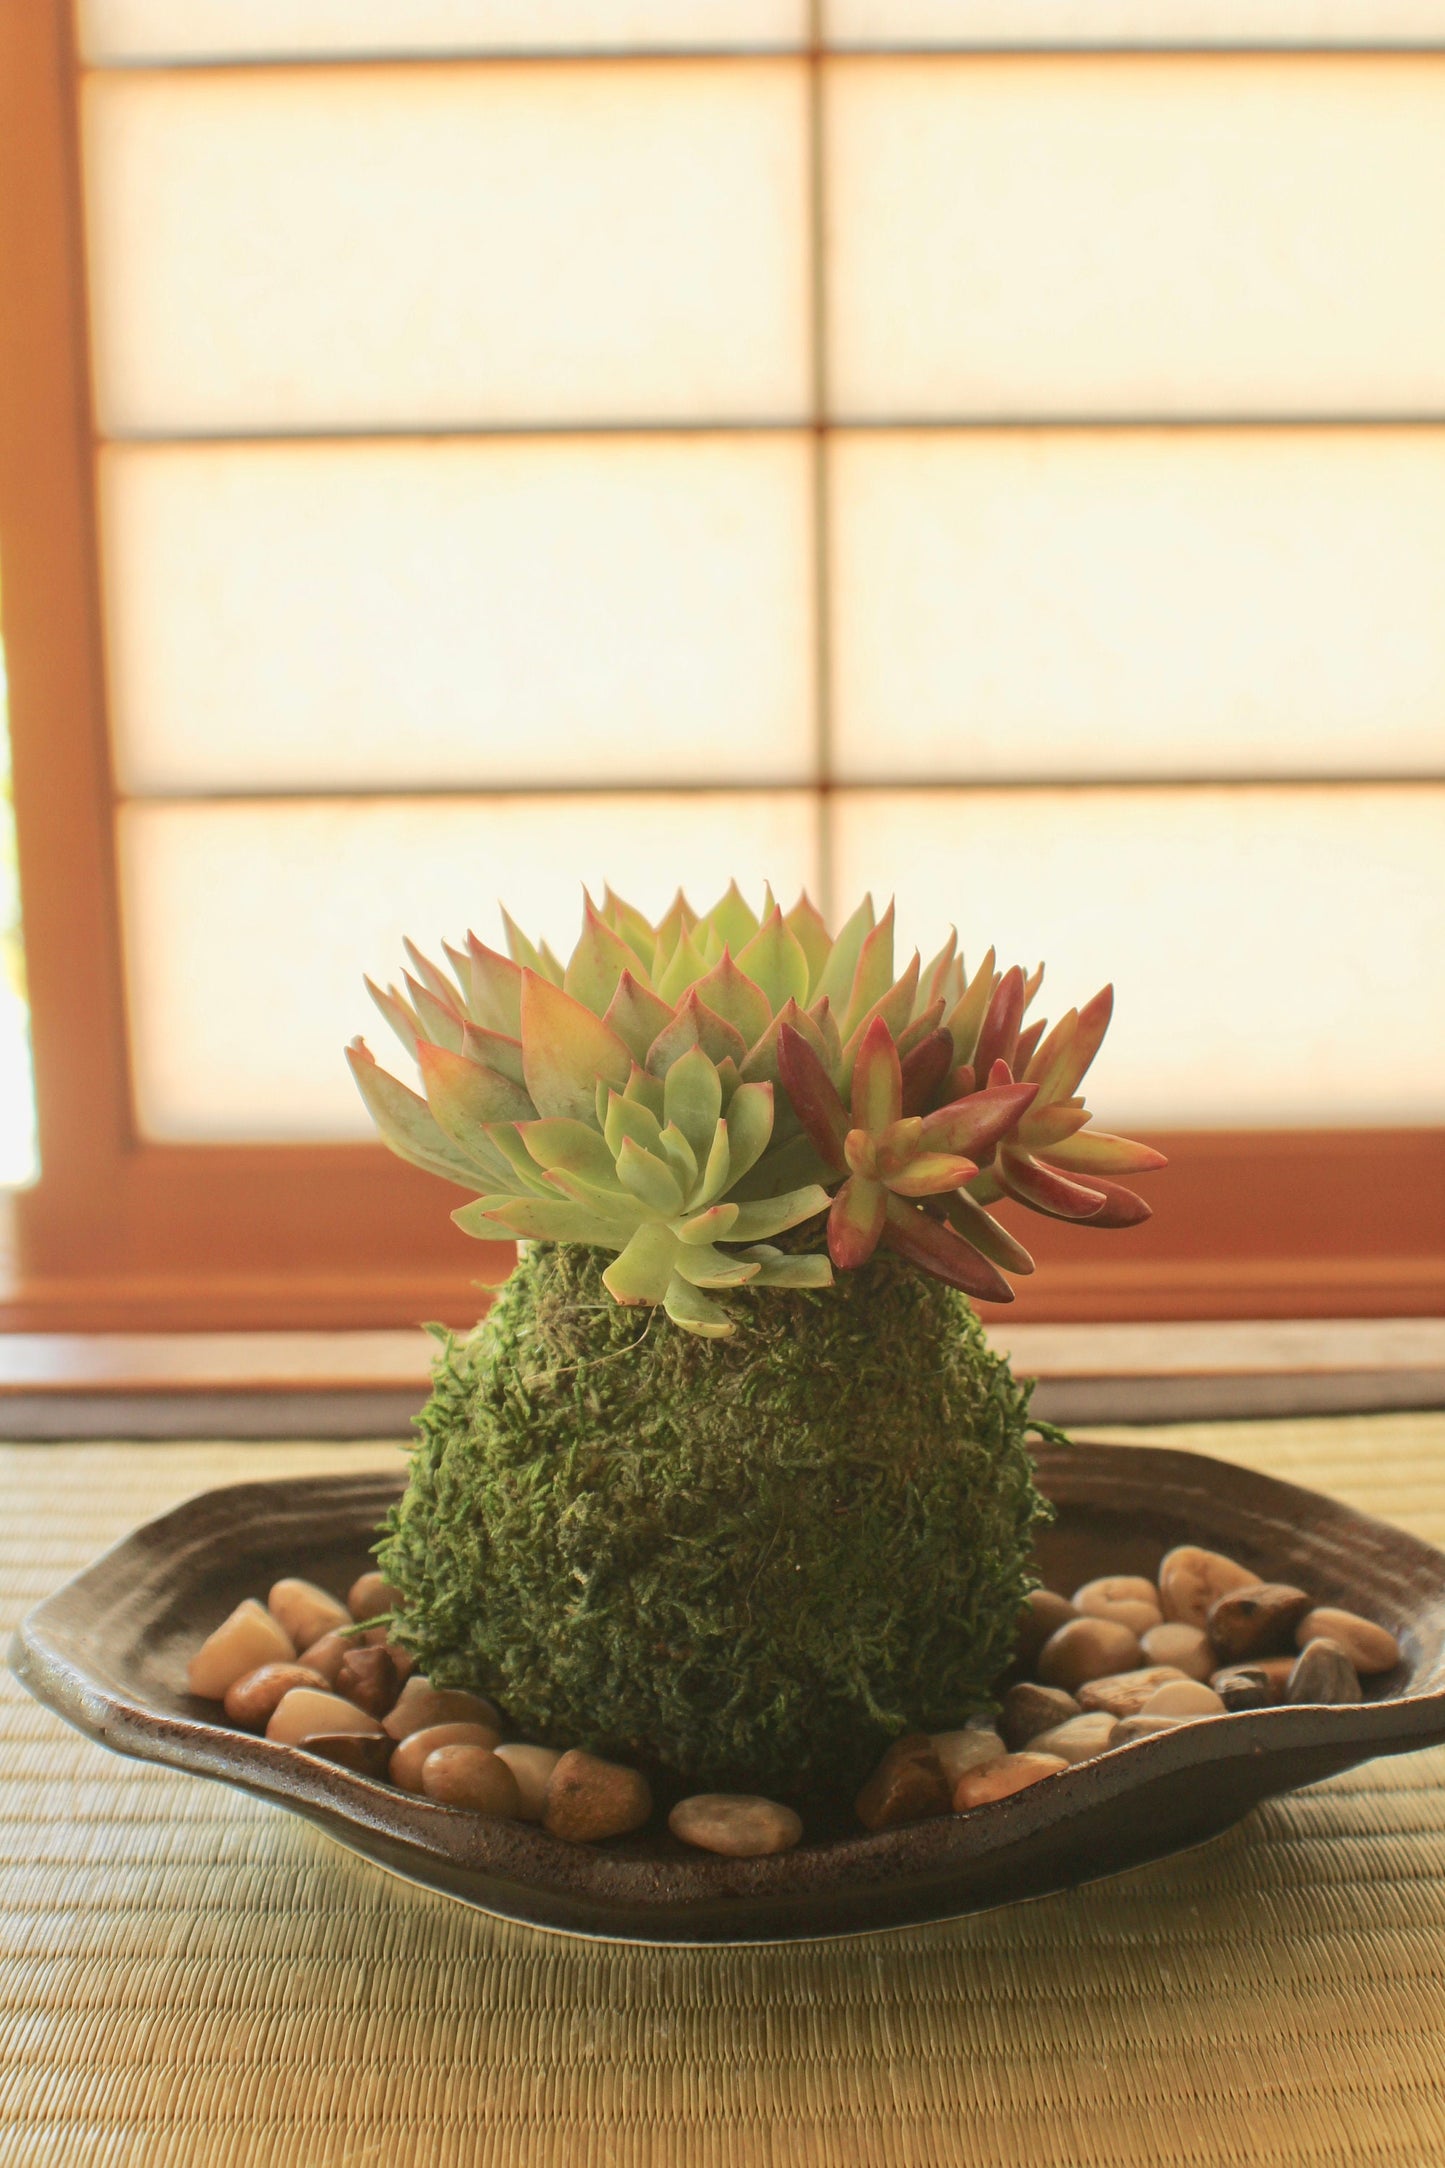 Assorted arranged Succulent Kokedama - Moss ball